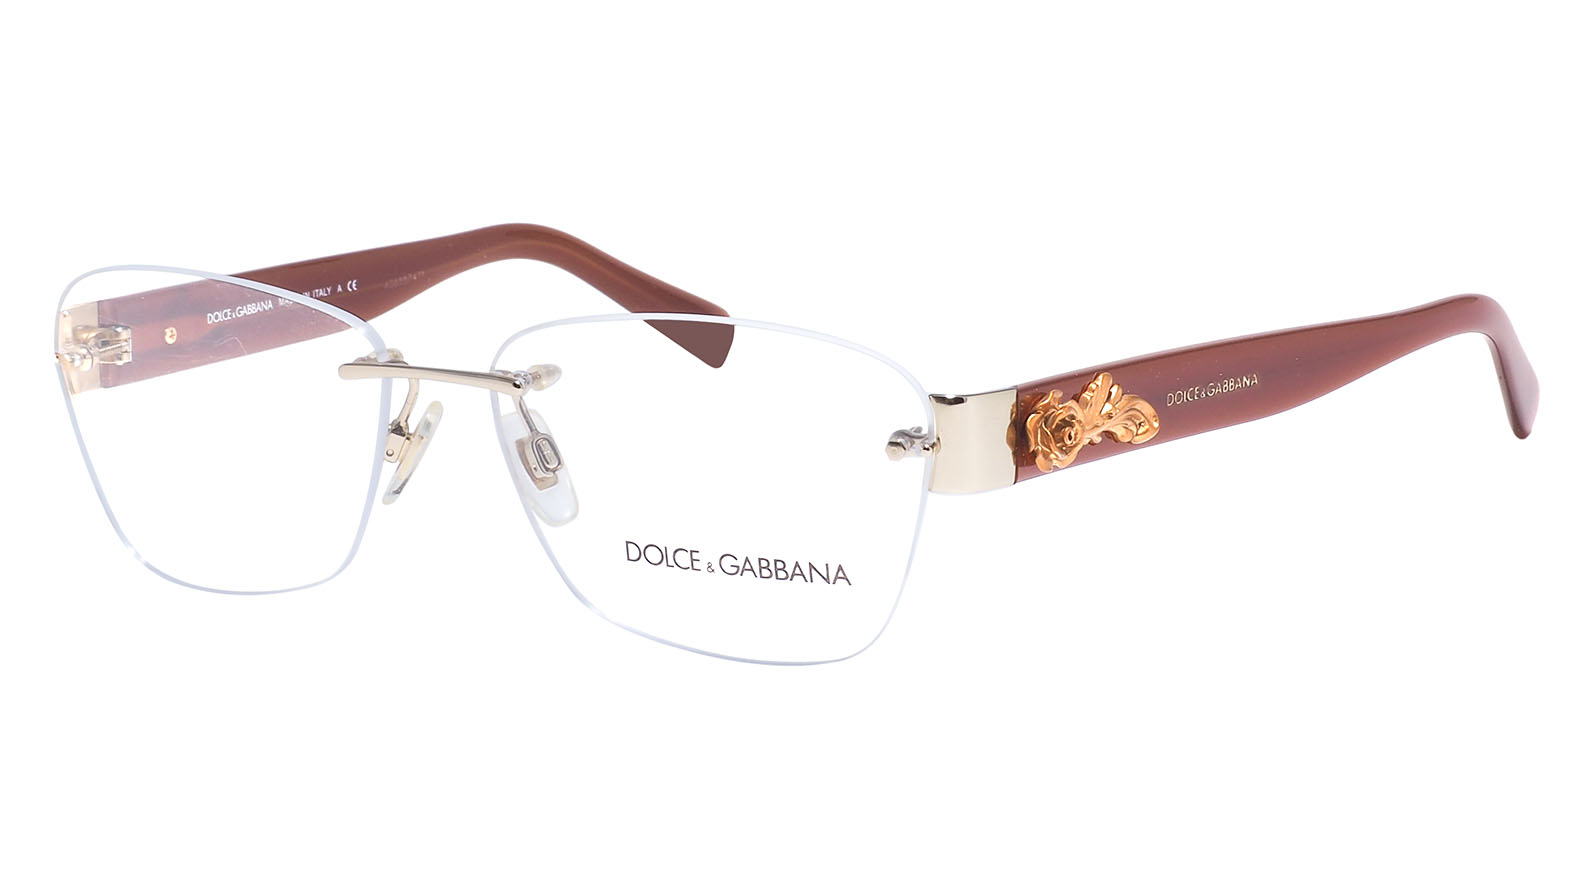 Dolce&Gabbana 1241 1207 m micallef ananda dolce 30